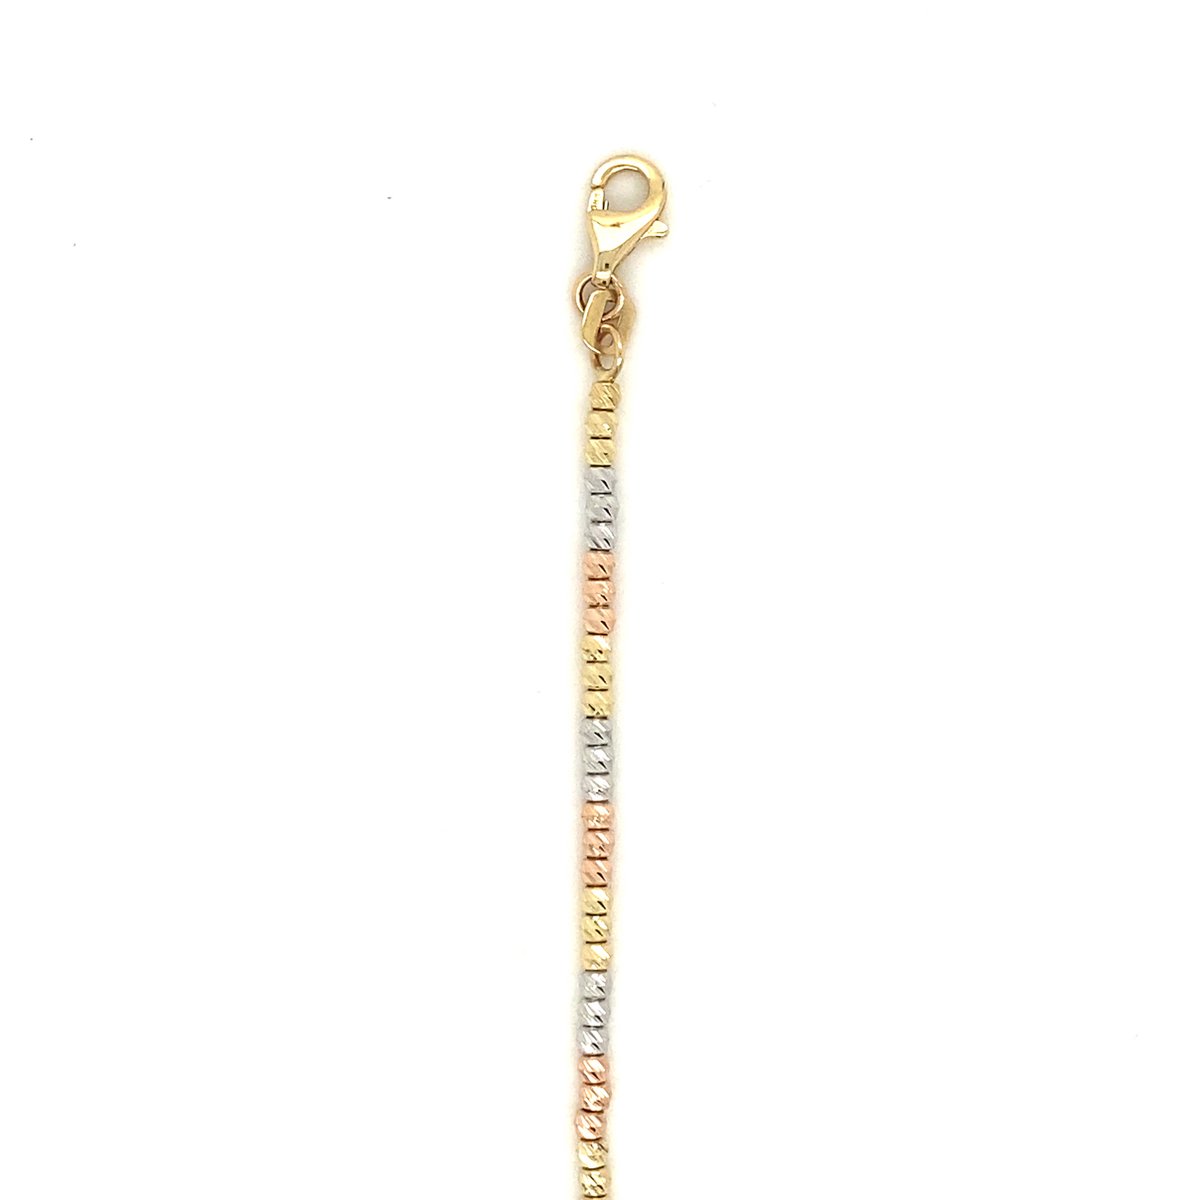 DGW - Sieraden - Armband - Goud - 14kt - 3.7 gram - Volwassenen - 22 cm